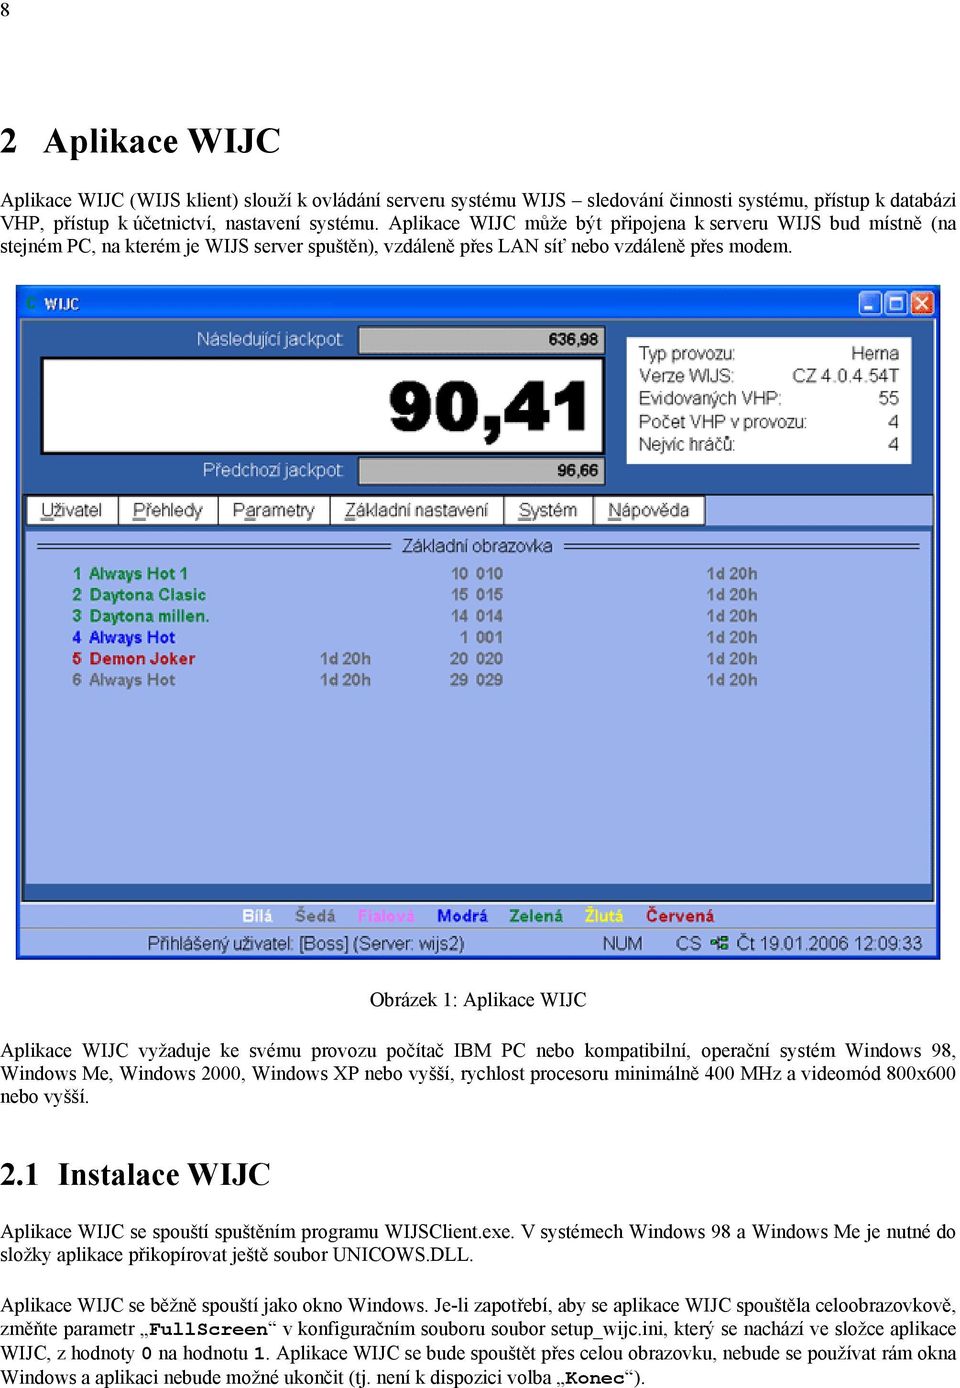 Obrázek 1: Aplikace WIJC Aplikace WIJC vyžaduje ke svému provozu počítač IBM PC nebo kompatibilní, operační systém Windows 98, Windows Me, Windows 2000, Windows XP nebo vyšší, rychlost procesoru